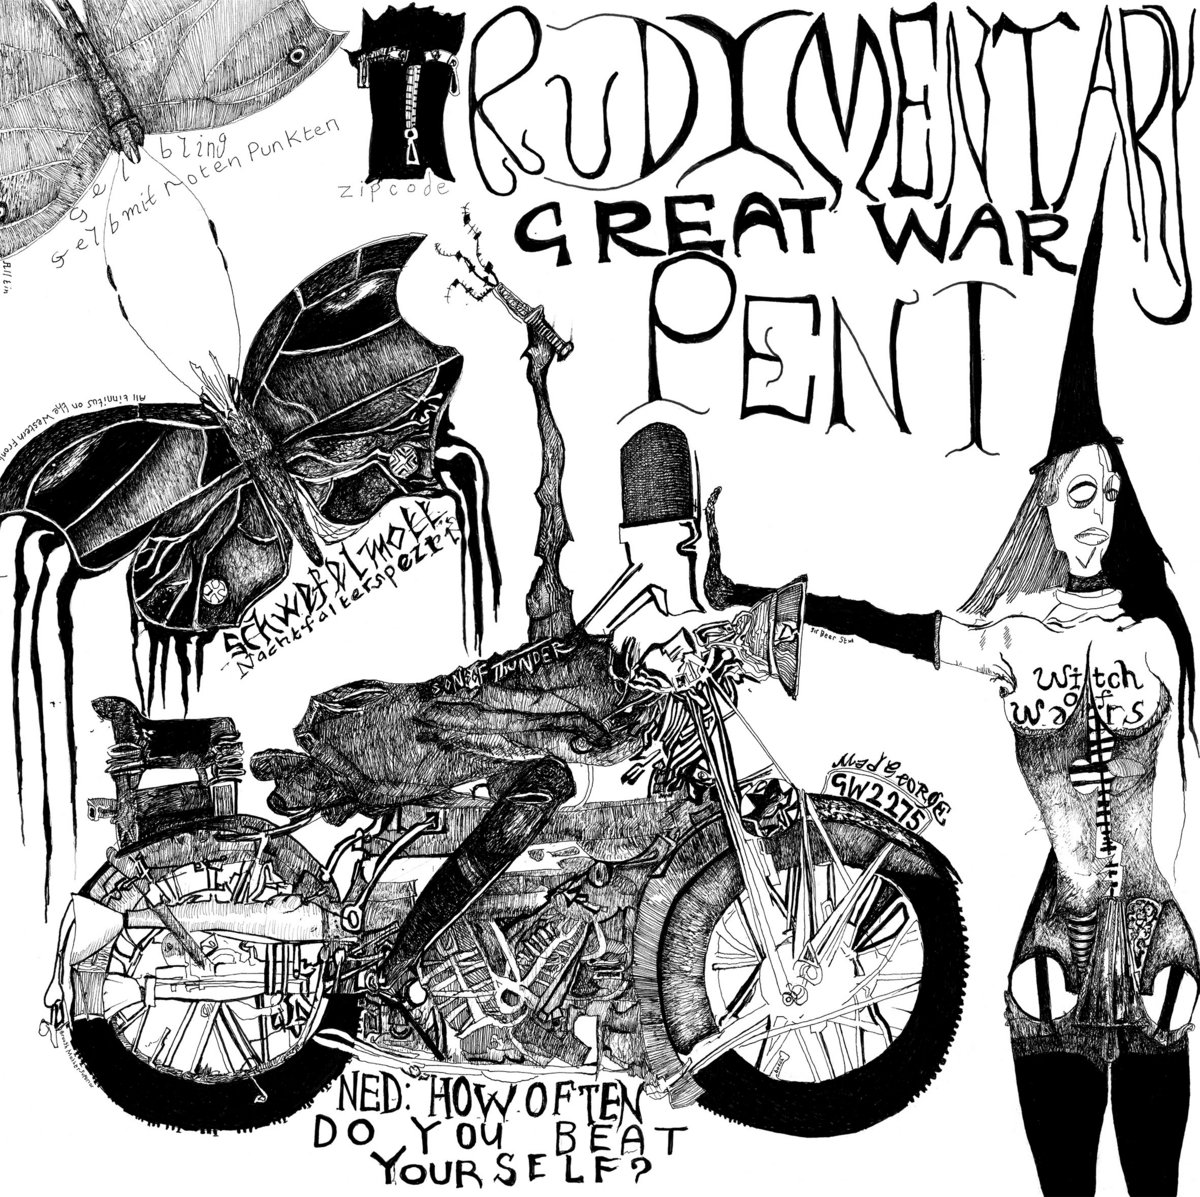 Rudimentary Peni - Great War (RSD2021) - LP